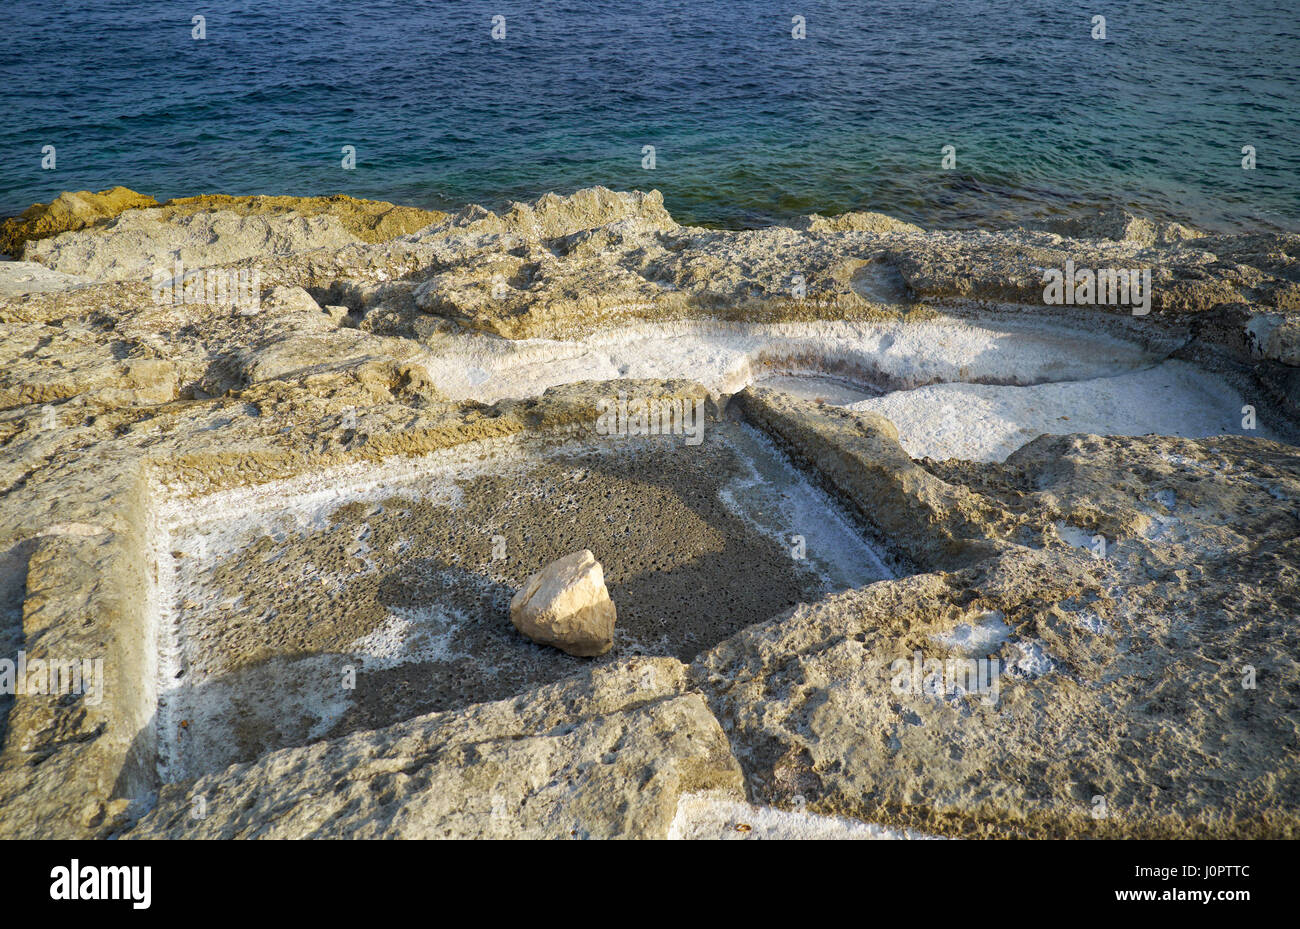 Vieilles pierres historiques salines à Marsaskala côte, utilisé pour obtenir le sel de l'eau de mer par évaporation, Malte Banque D'Images